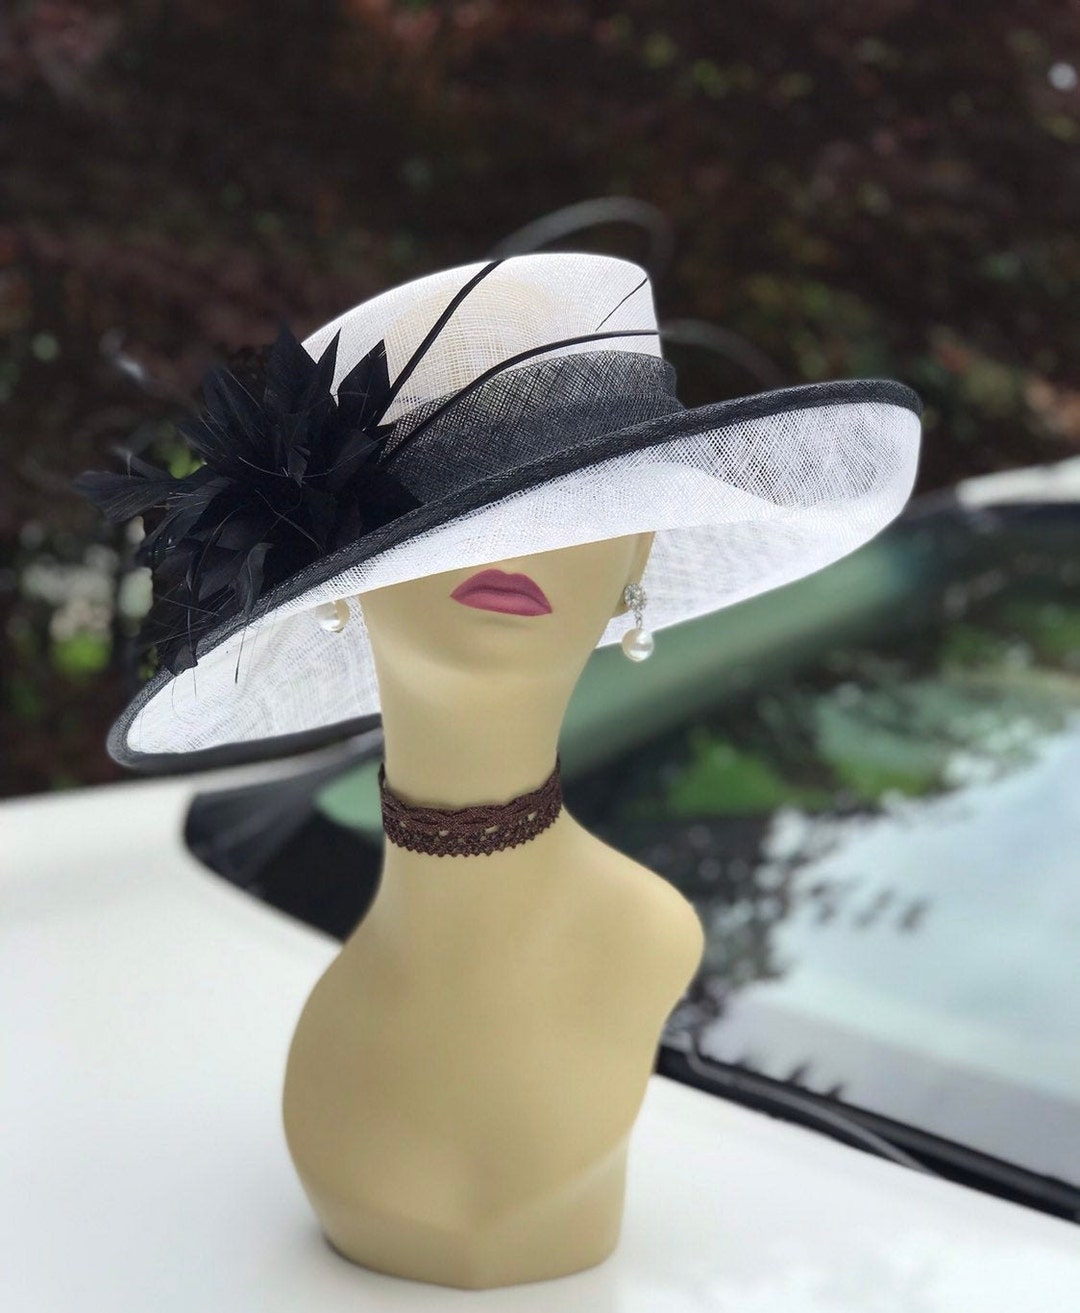 NEW - Women's Wide Brim Mesh Derby Church Hats, Black, White - 4237